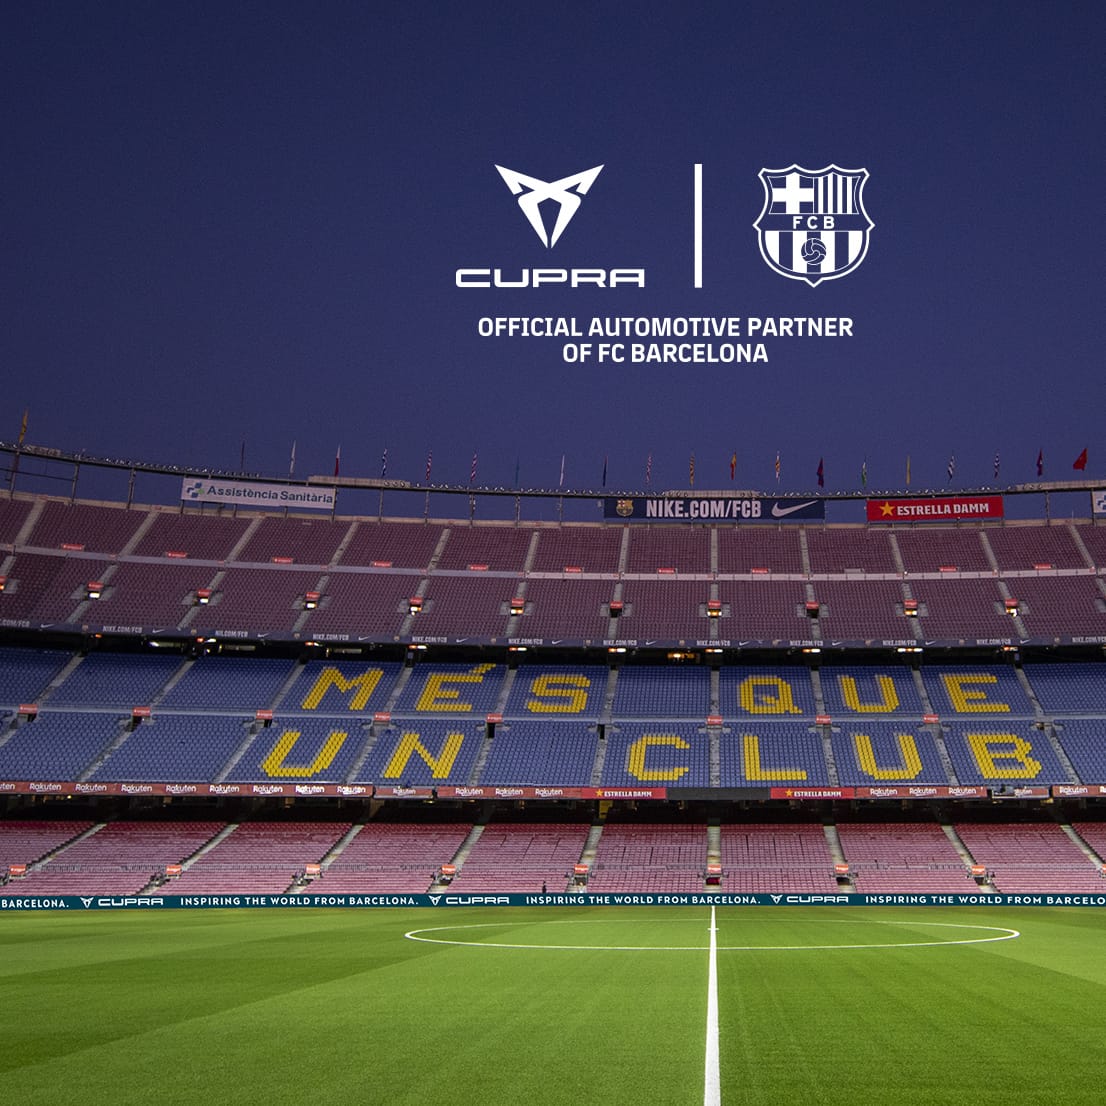 Άδειες κερκίδες του σταδίου Camp Nou με το μήνυμα «Περισσότερο από μια ομάδα», στα καταλανικά.